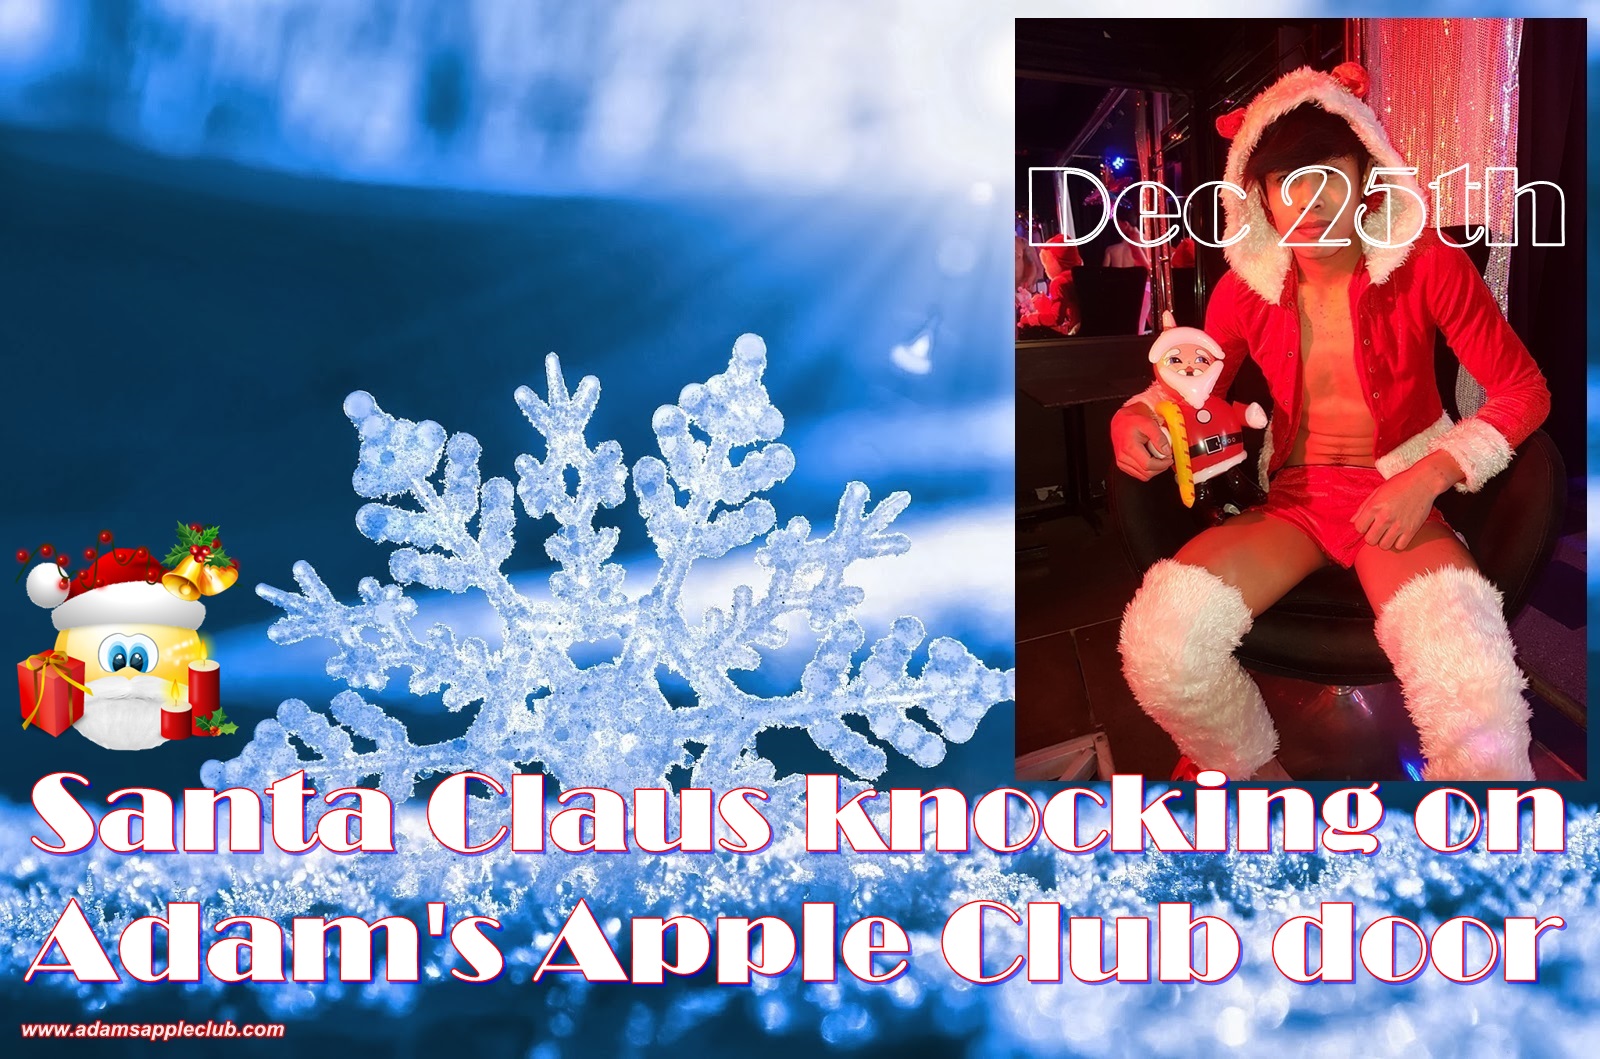 Santa Claus knocking on Adam's Apple Club door